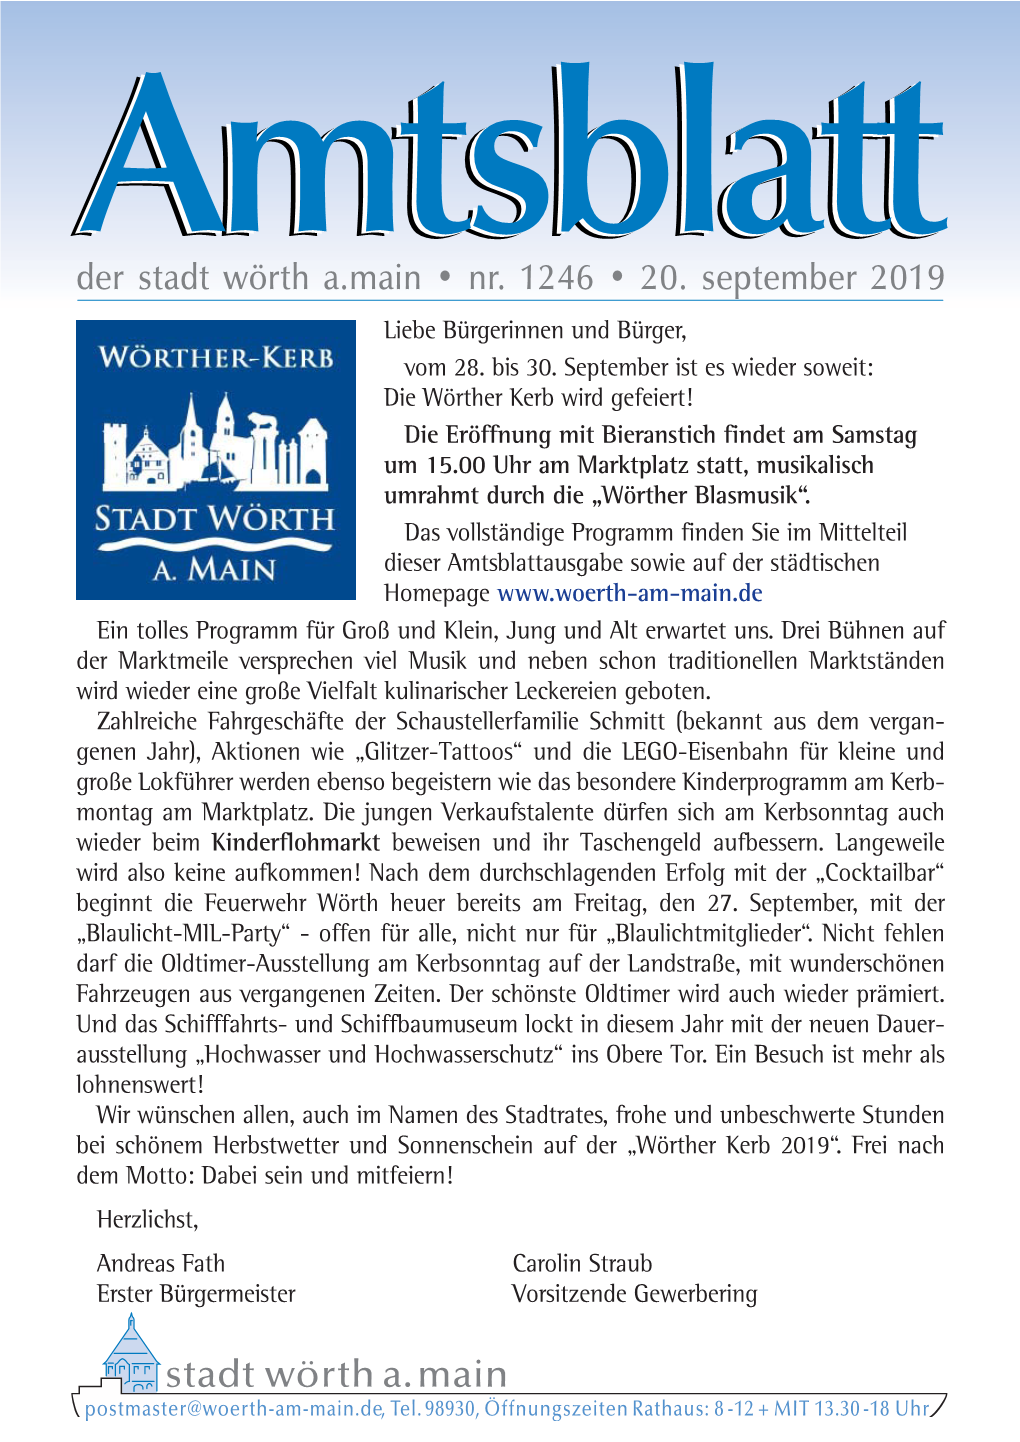 Amtsblatt 1246.Indd